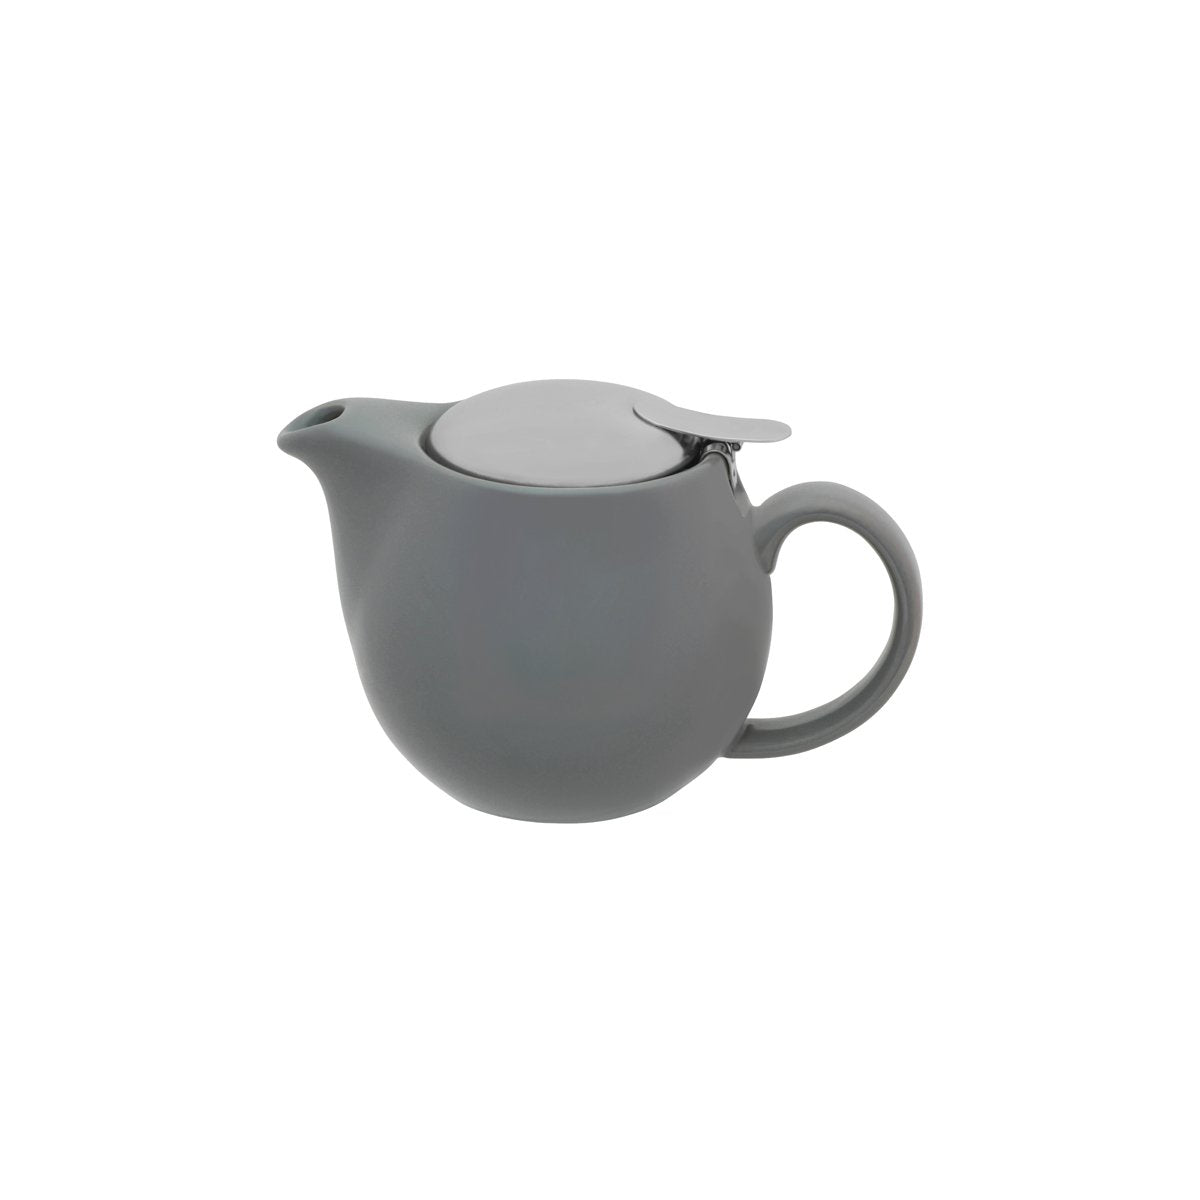 BW0570 Brew French Grey Teapot 350ml Tomkin Australia Hospitality Supplies